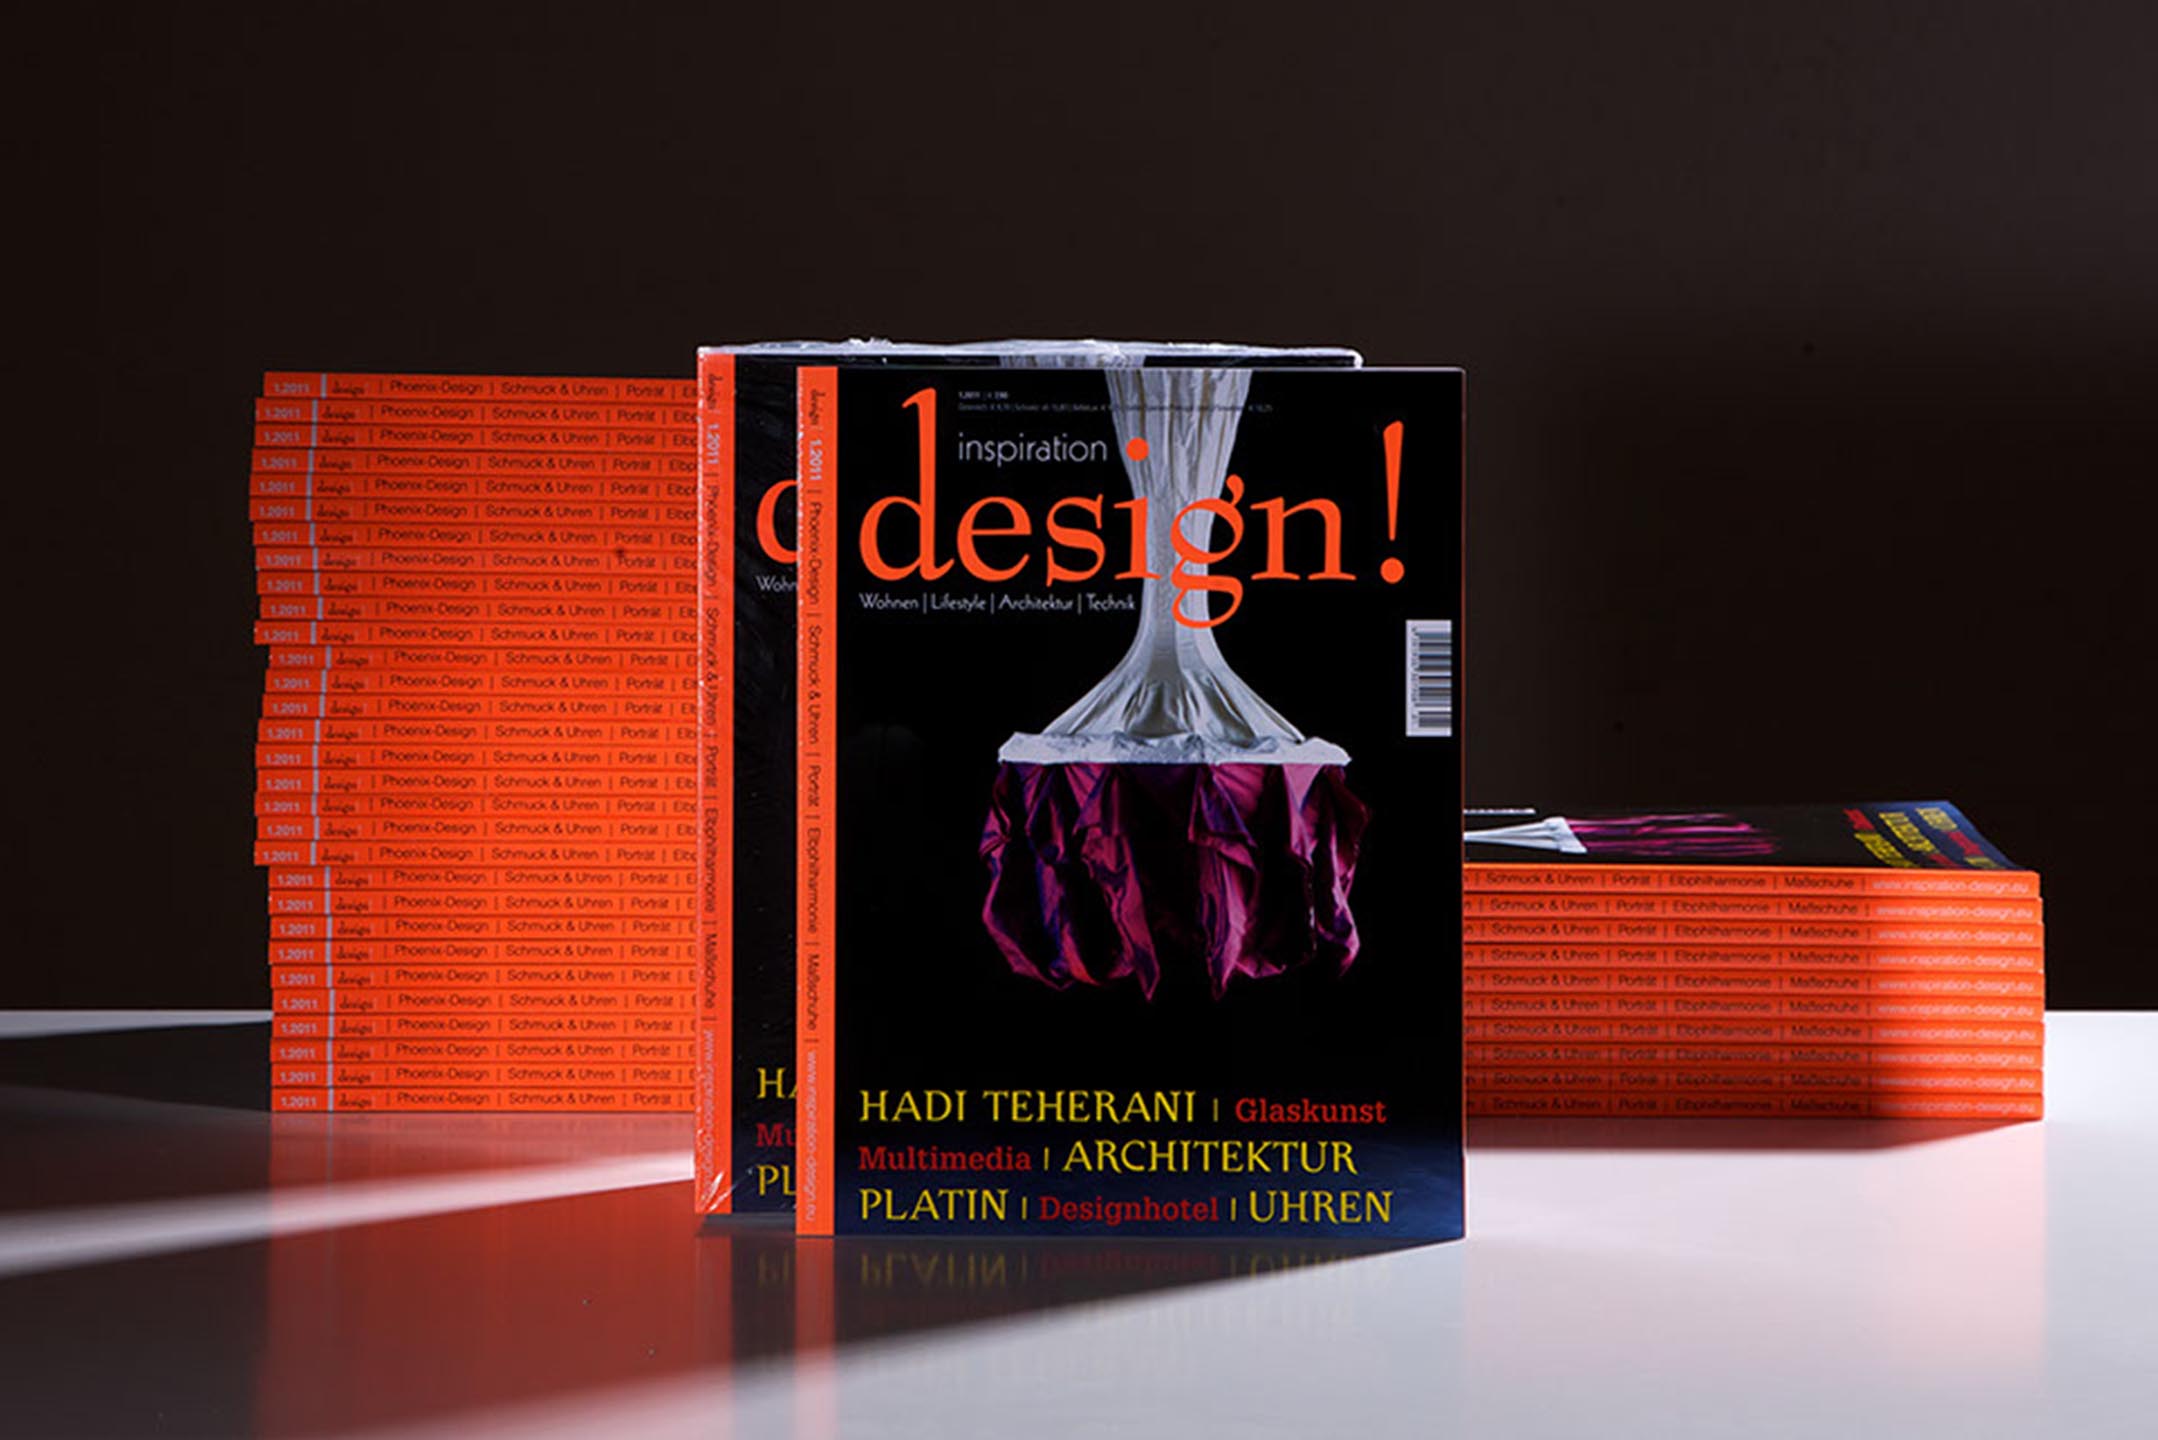 architektur inspiration-design-1.2011 - Mario Hein architekursalon leipzig